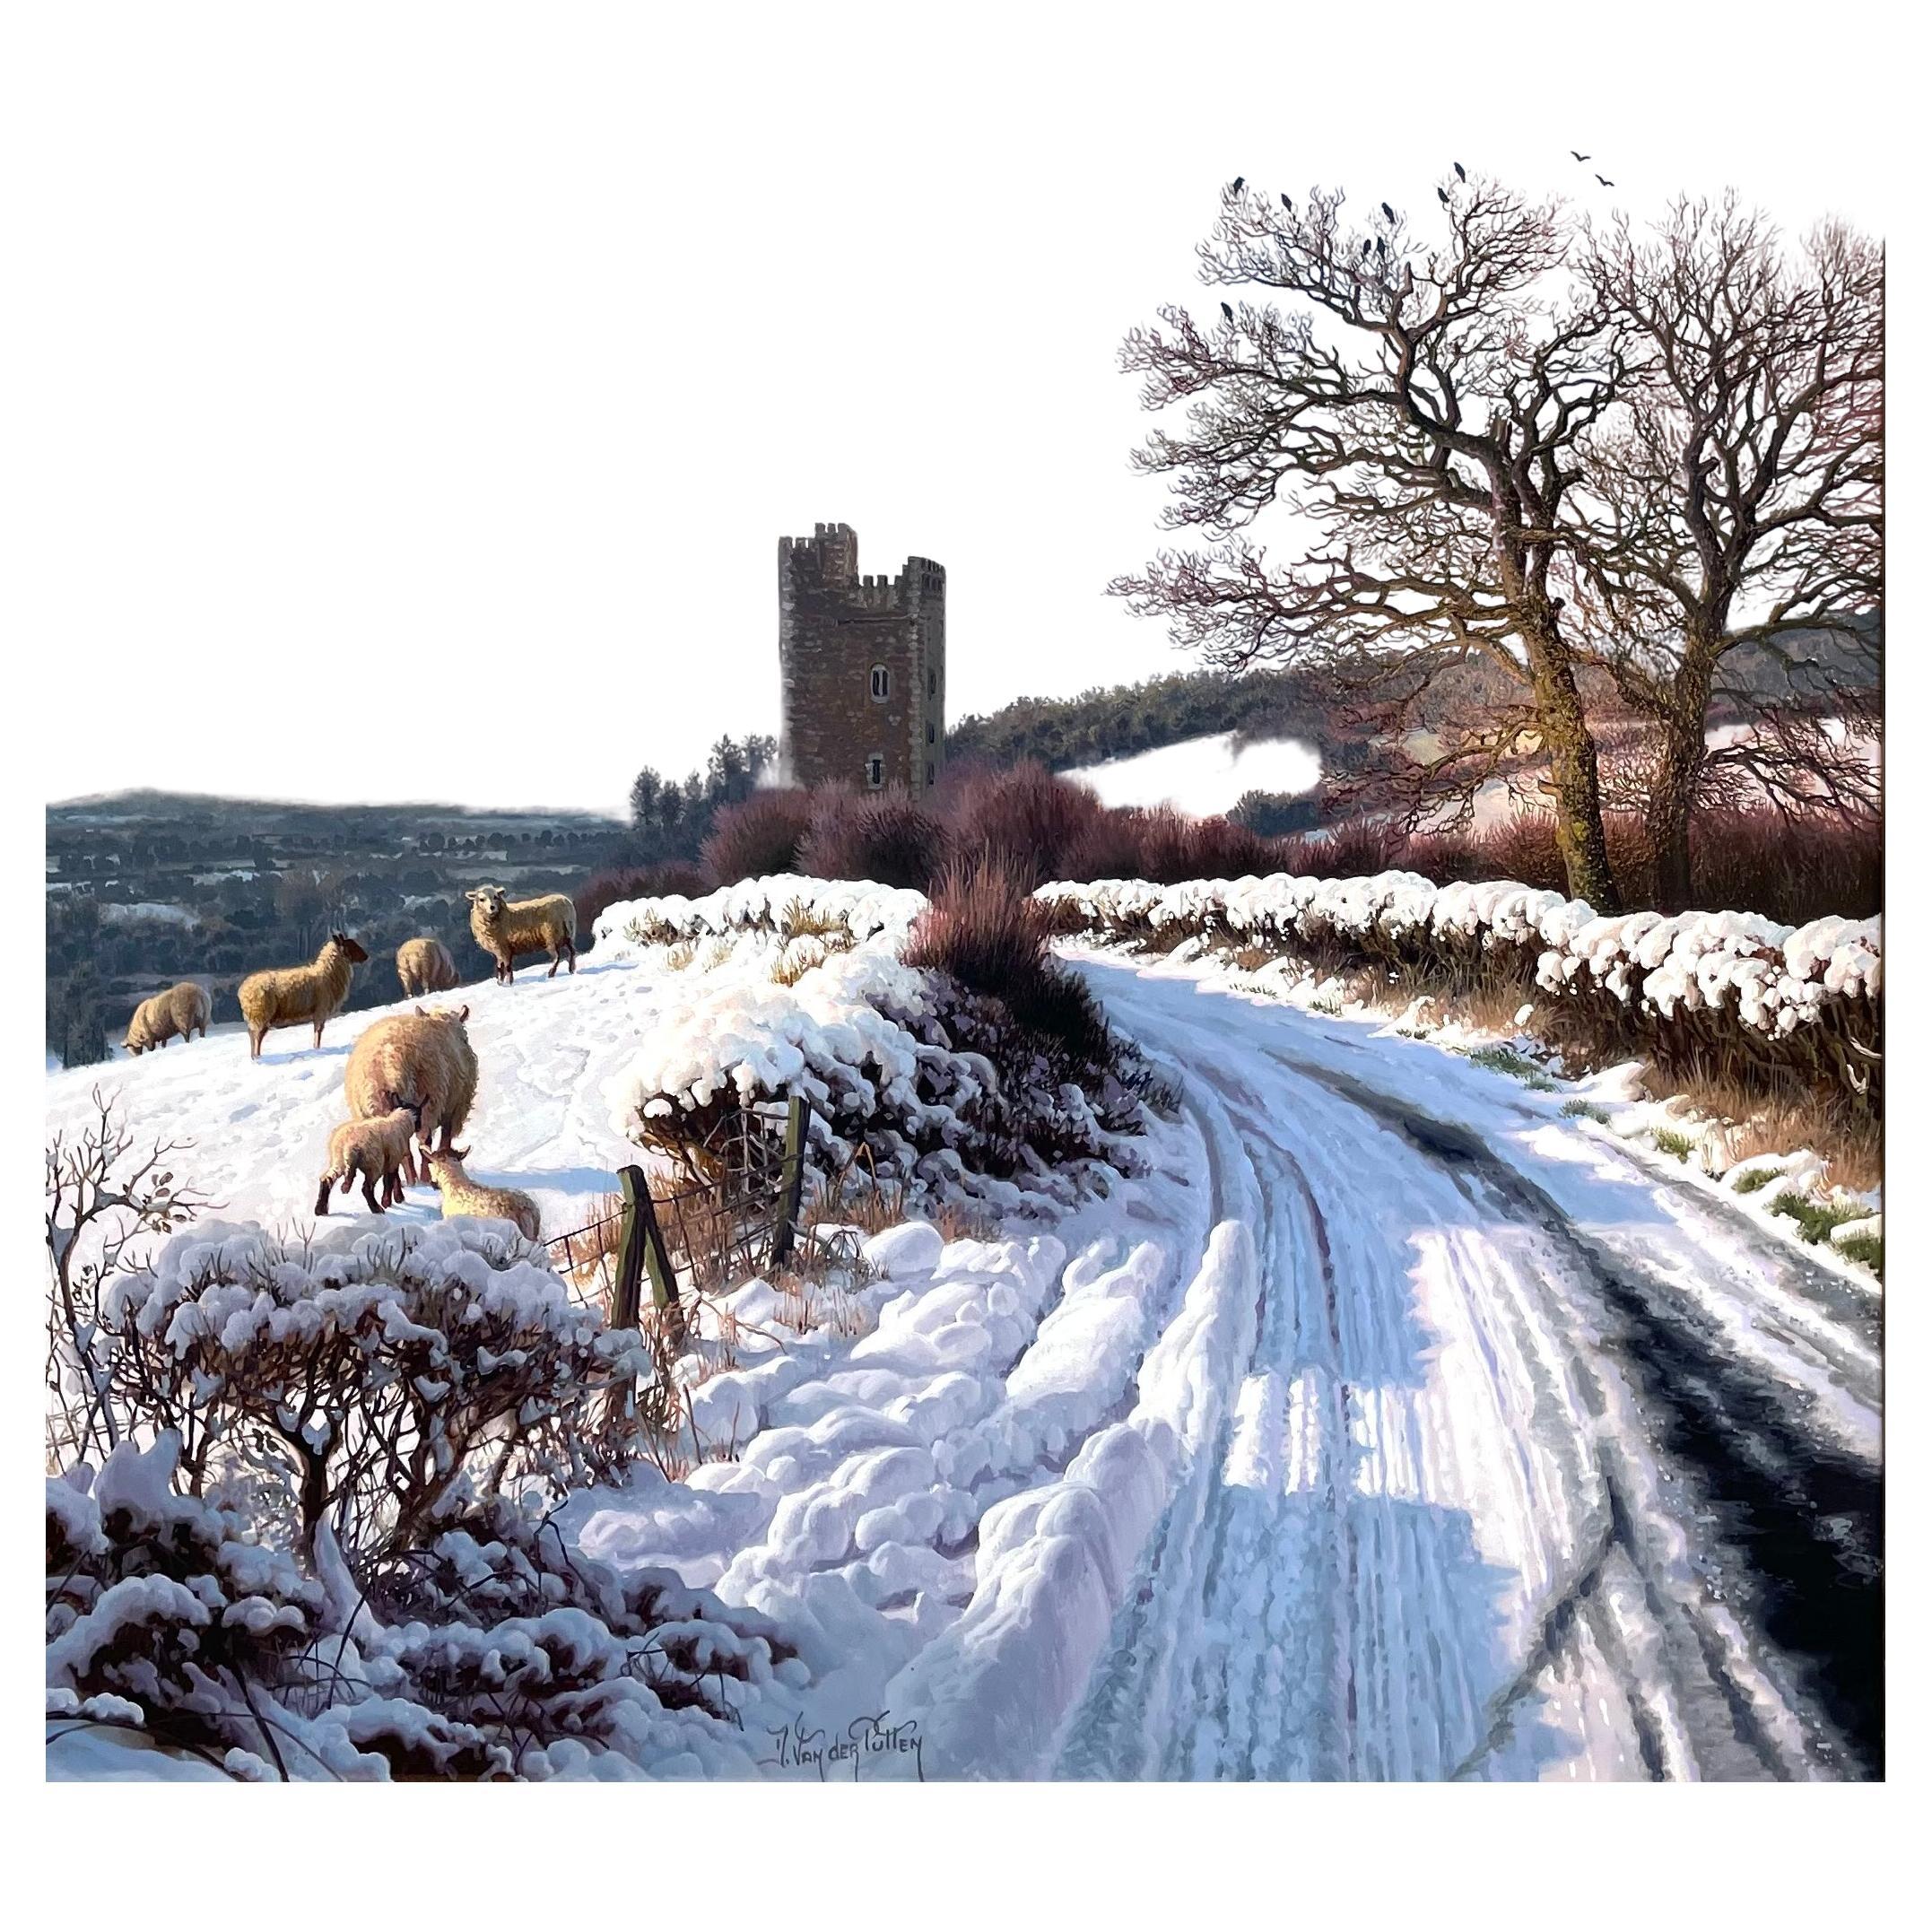 Hervorragendes Gemälde von Daniel Van der Putten, das eine wunderbare ländliche Schneeszene zeigt, einen verschneiten Feldweg mit einer Schafherde auf der linken Seite und einem Blick auf Glenquin Castle Killeedy County Limerick Irland, in der